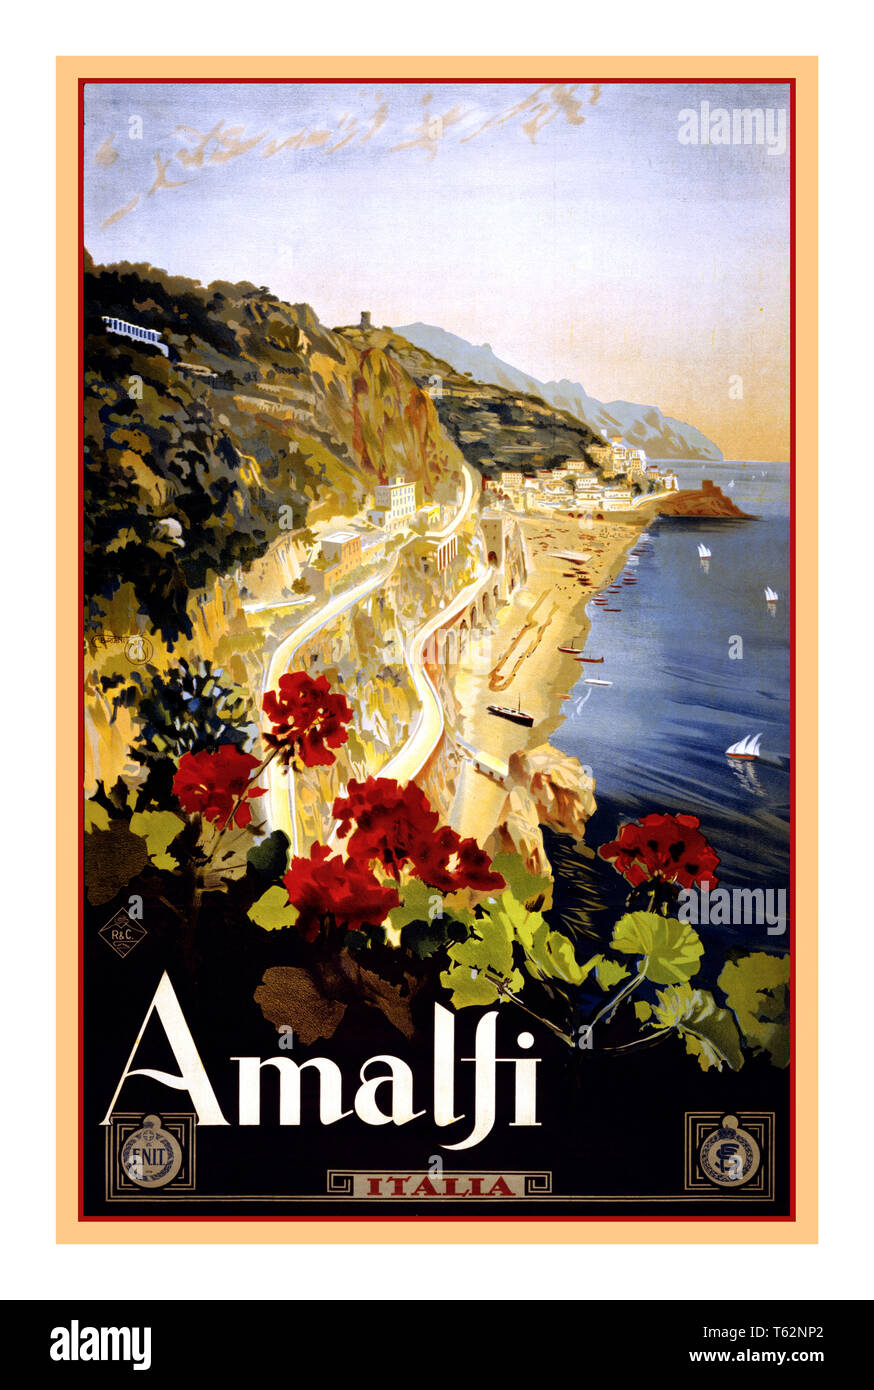 AMALFI Vintage Historic Retro Travel Poster 1900 Amalfi Italie Travel poster par Mario Borgoni, montre la côte amalfitaine avec des géraniums en premier plan. Date 1920 Amalfi Campanie Italie Banque D'Images